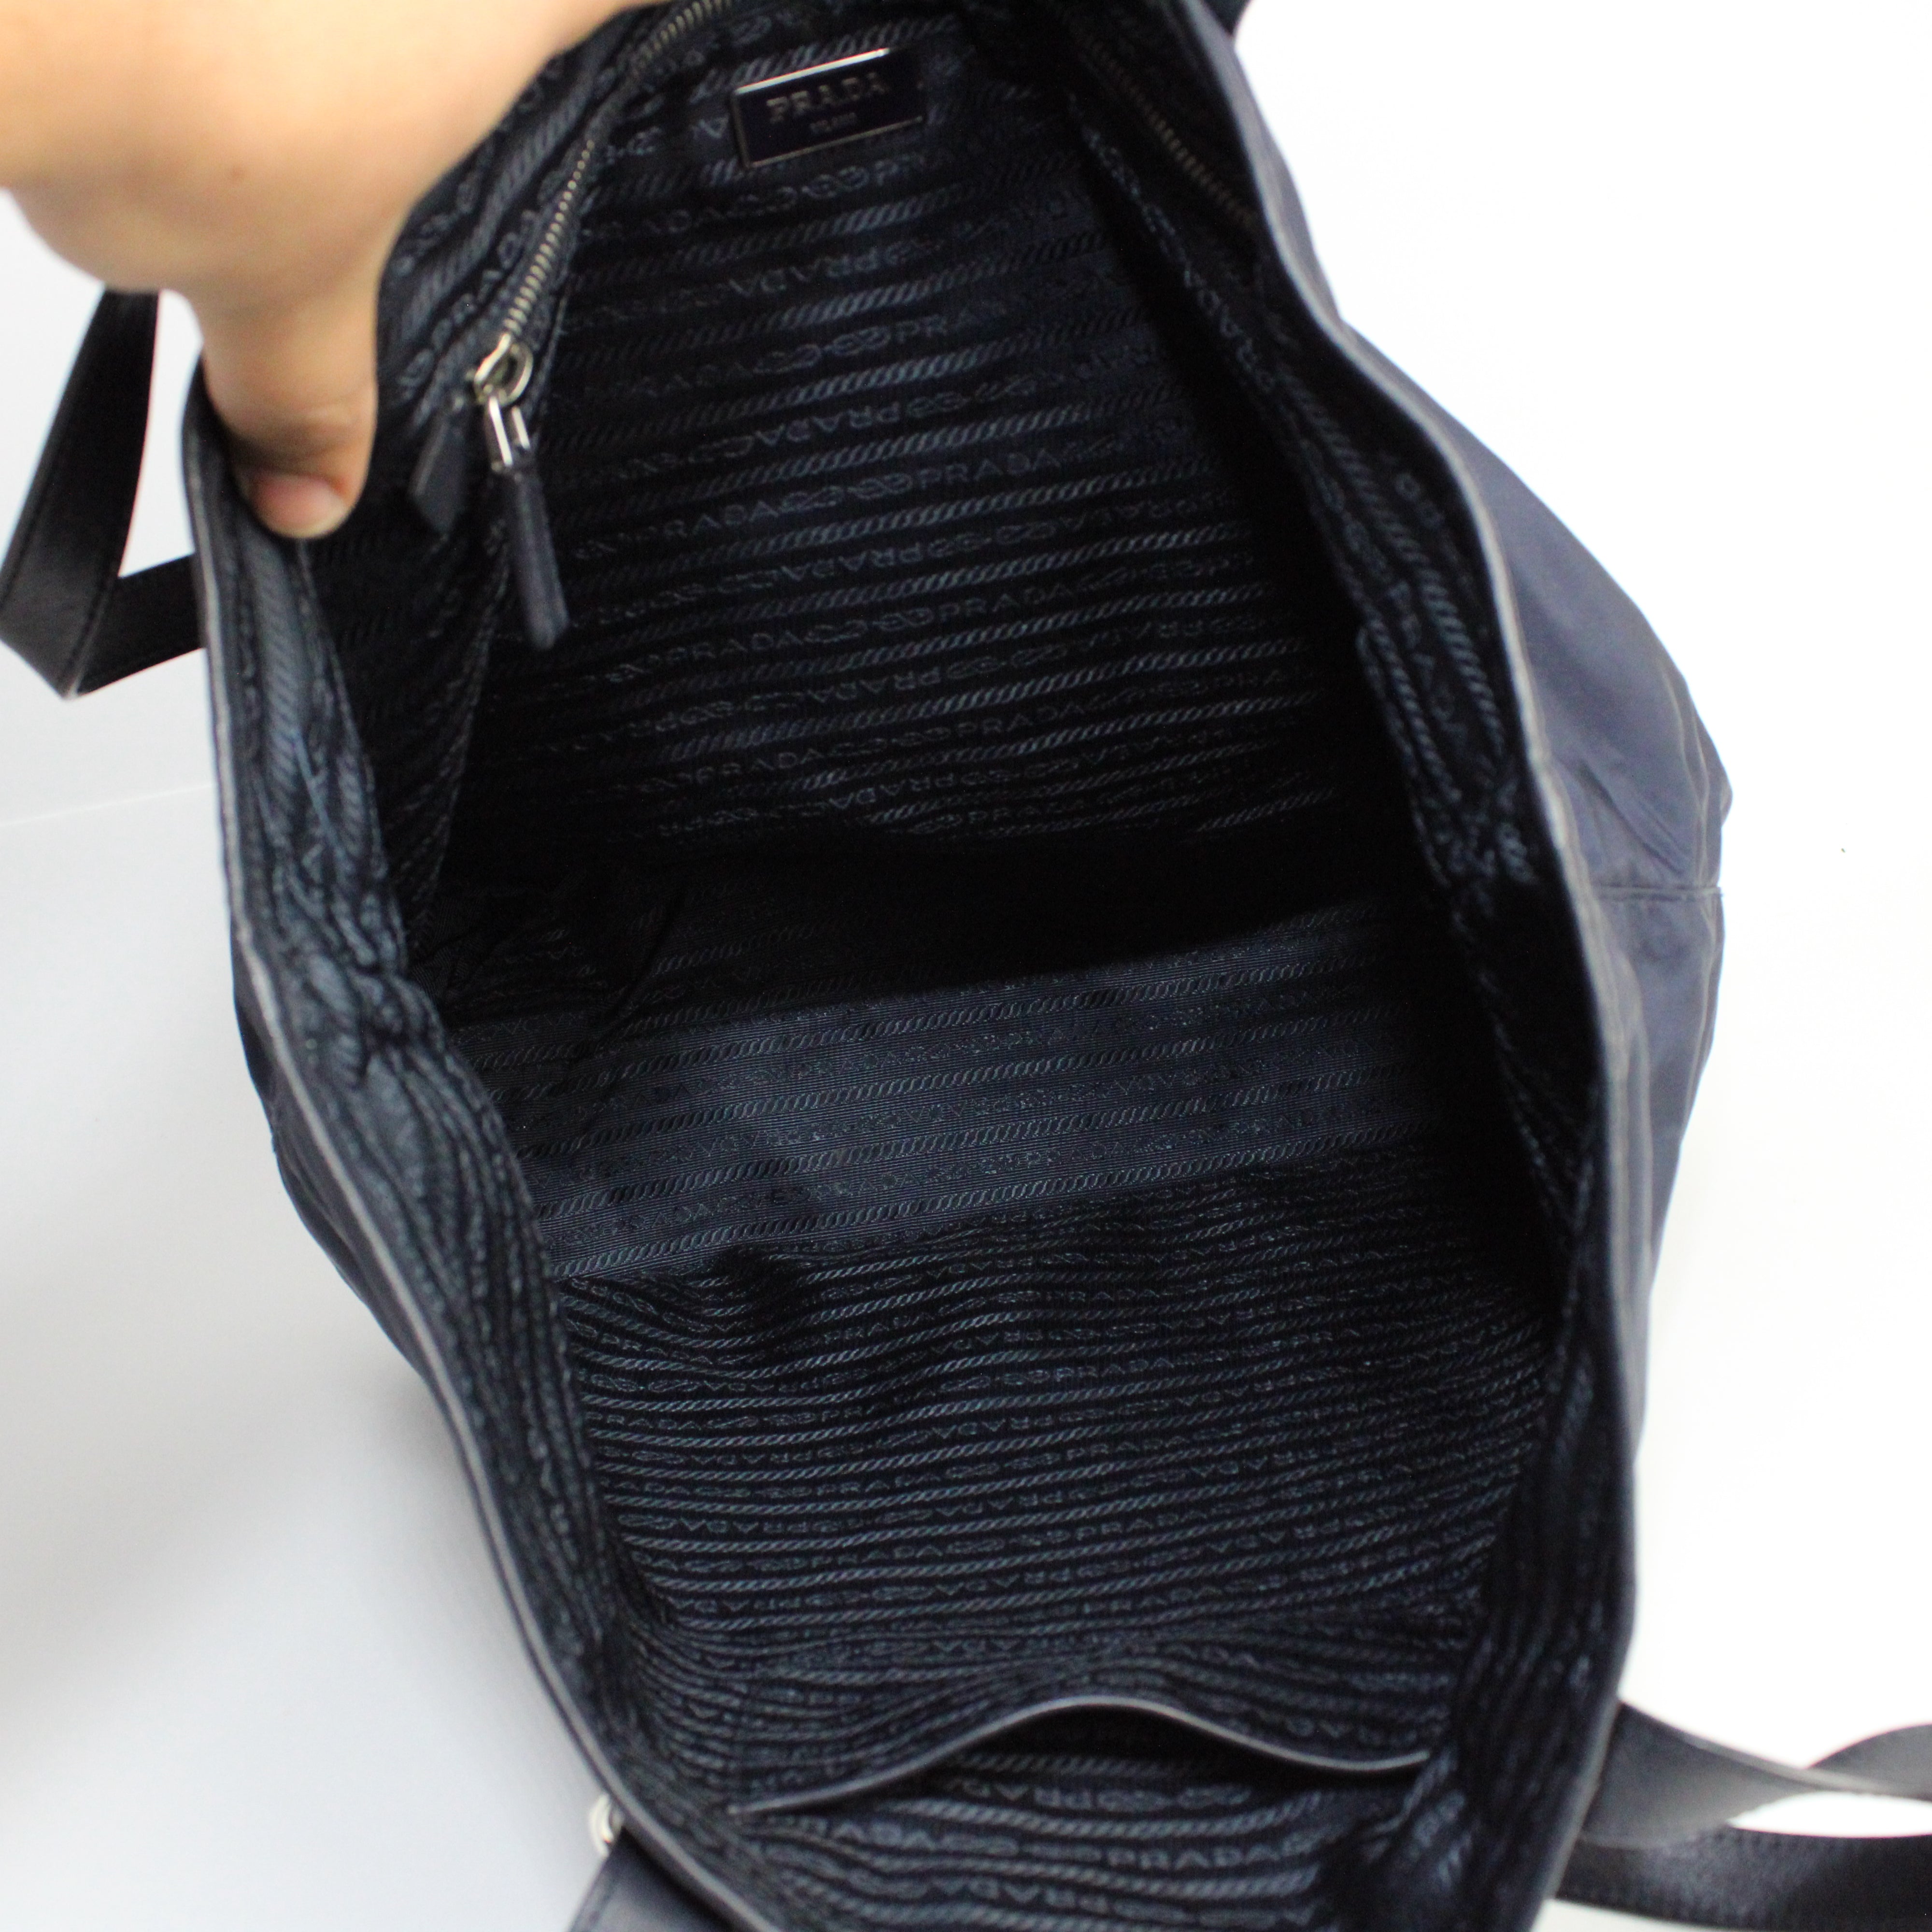 Prada Shopping Bag In Nylon